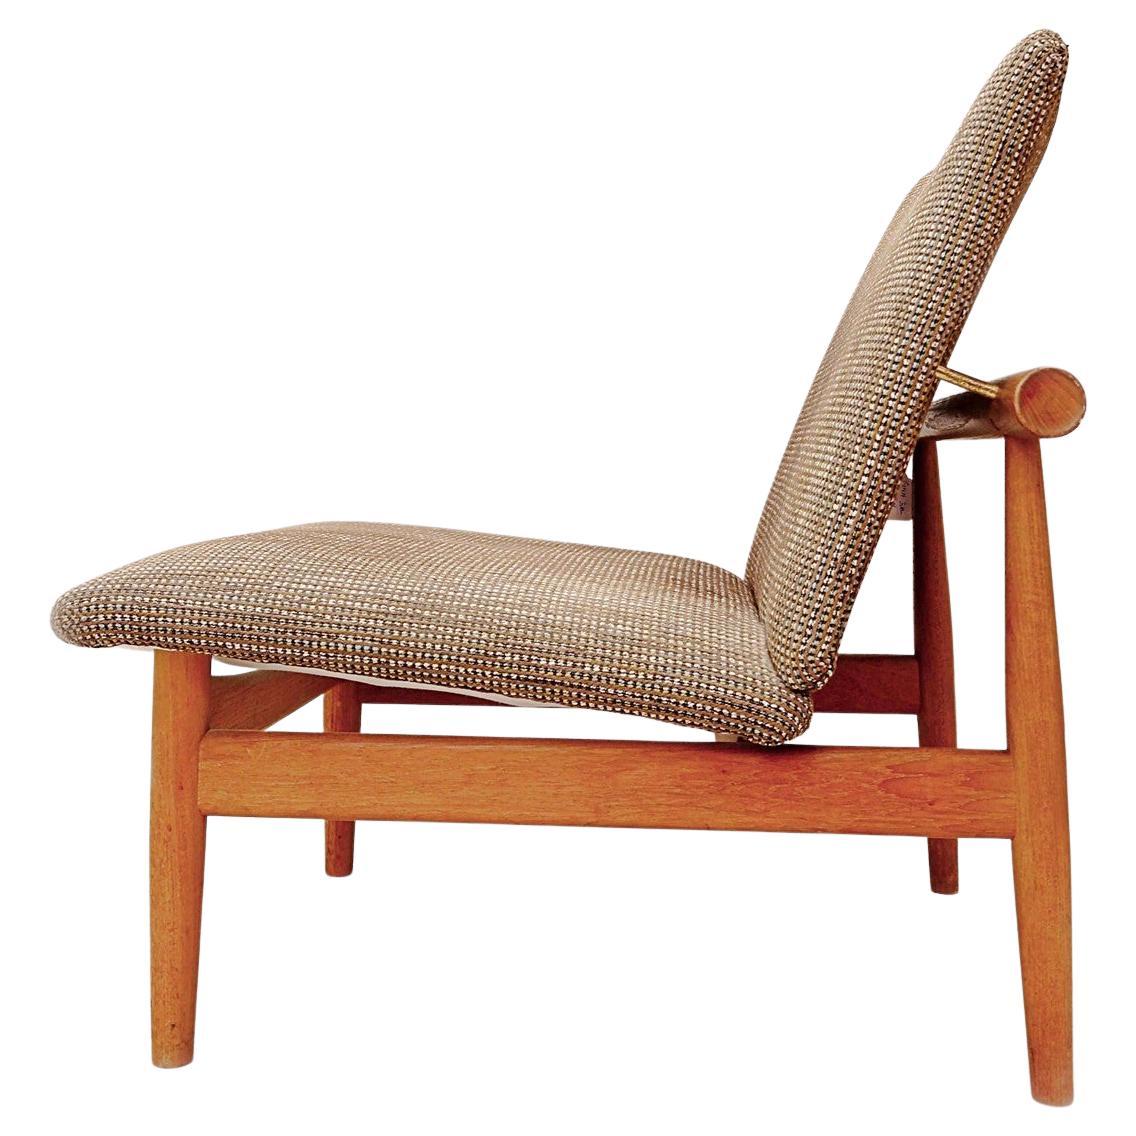 Finn Juhl 'Japan' Chair, Model 137 for France & Søn, 1960s